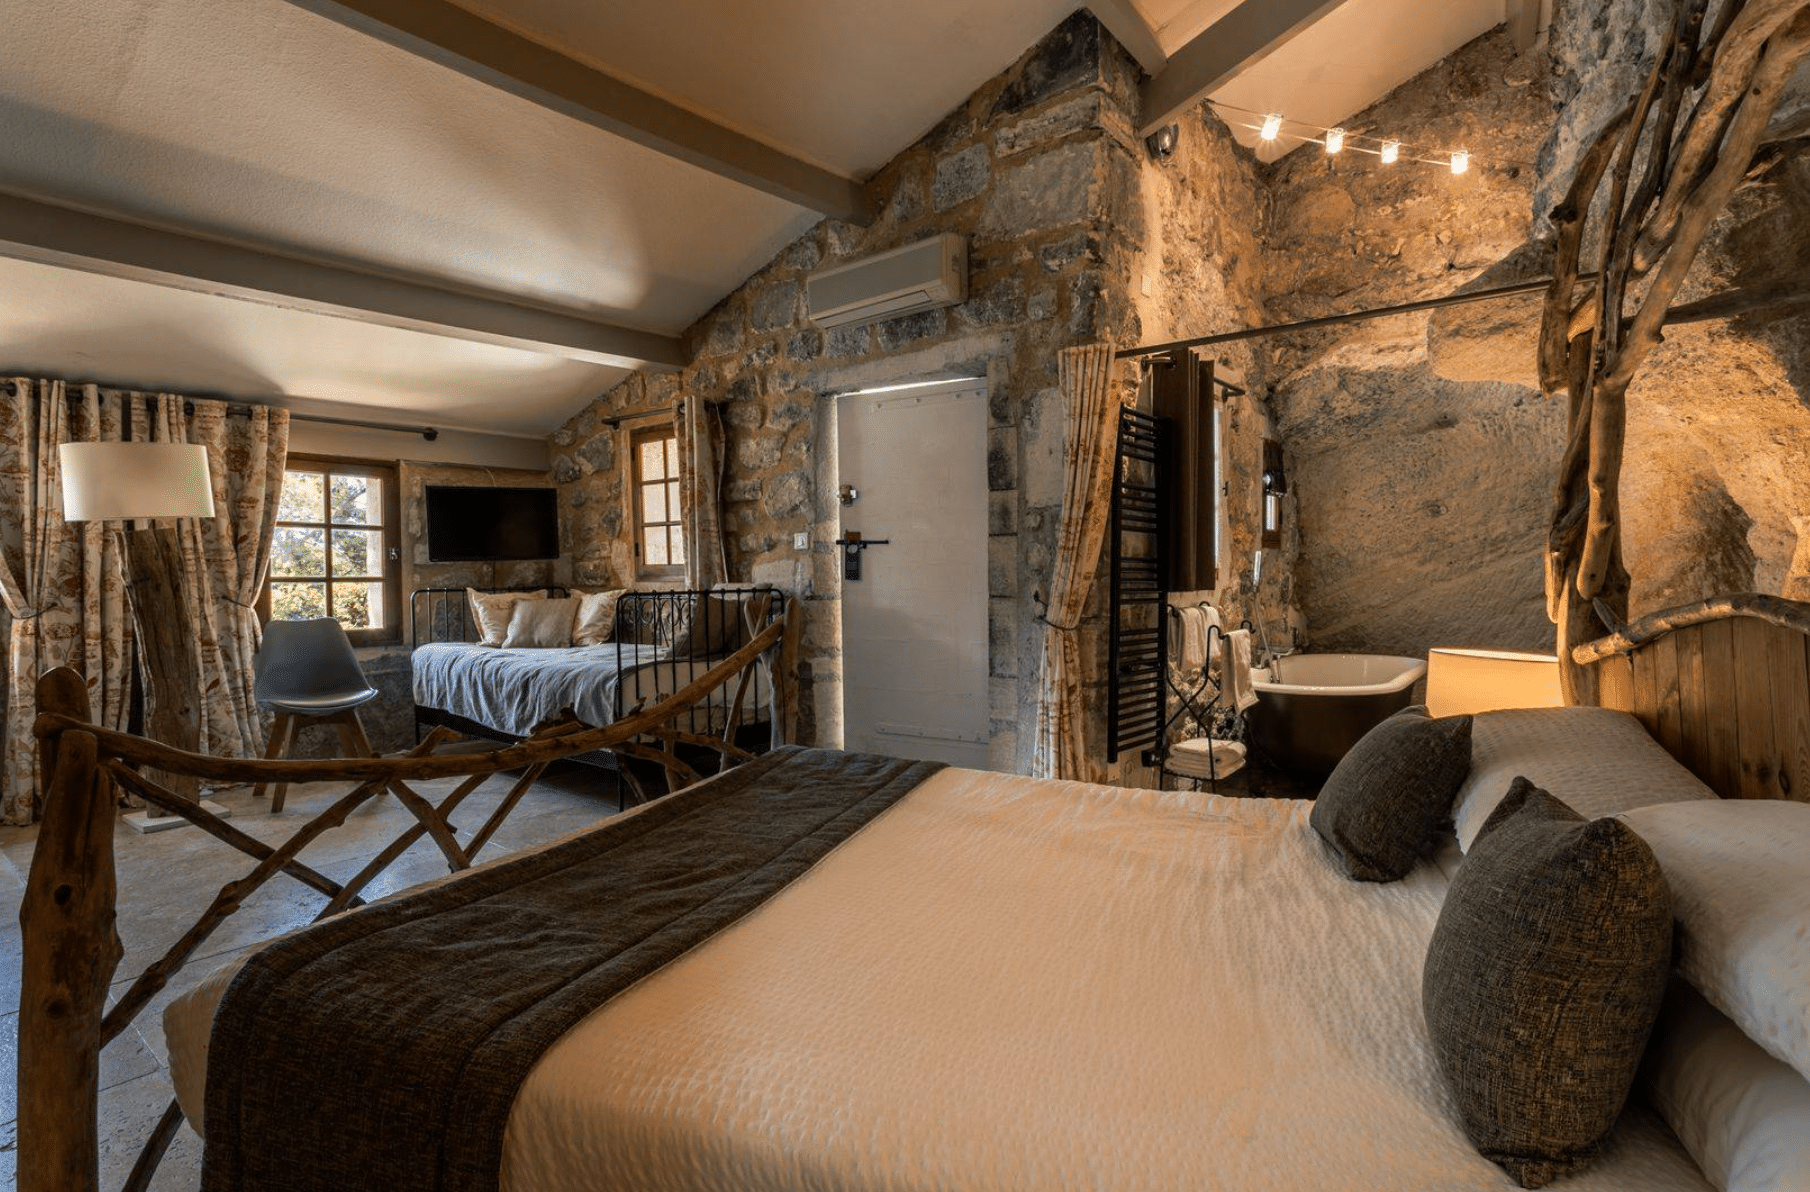 Où dormir en Provence ? 5 logements insolites